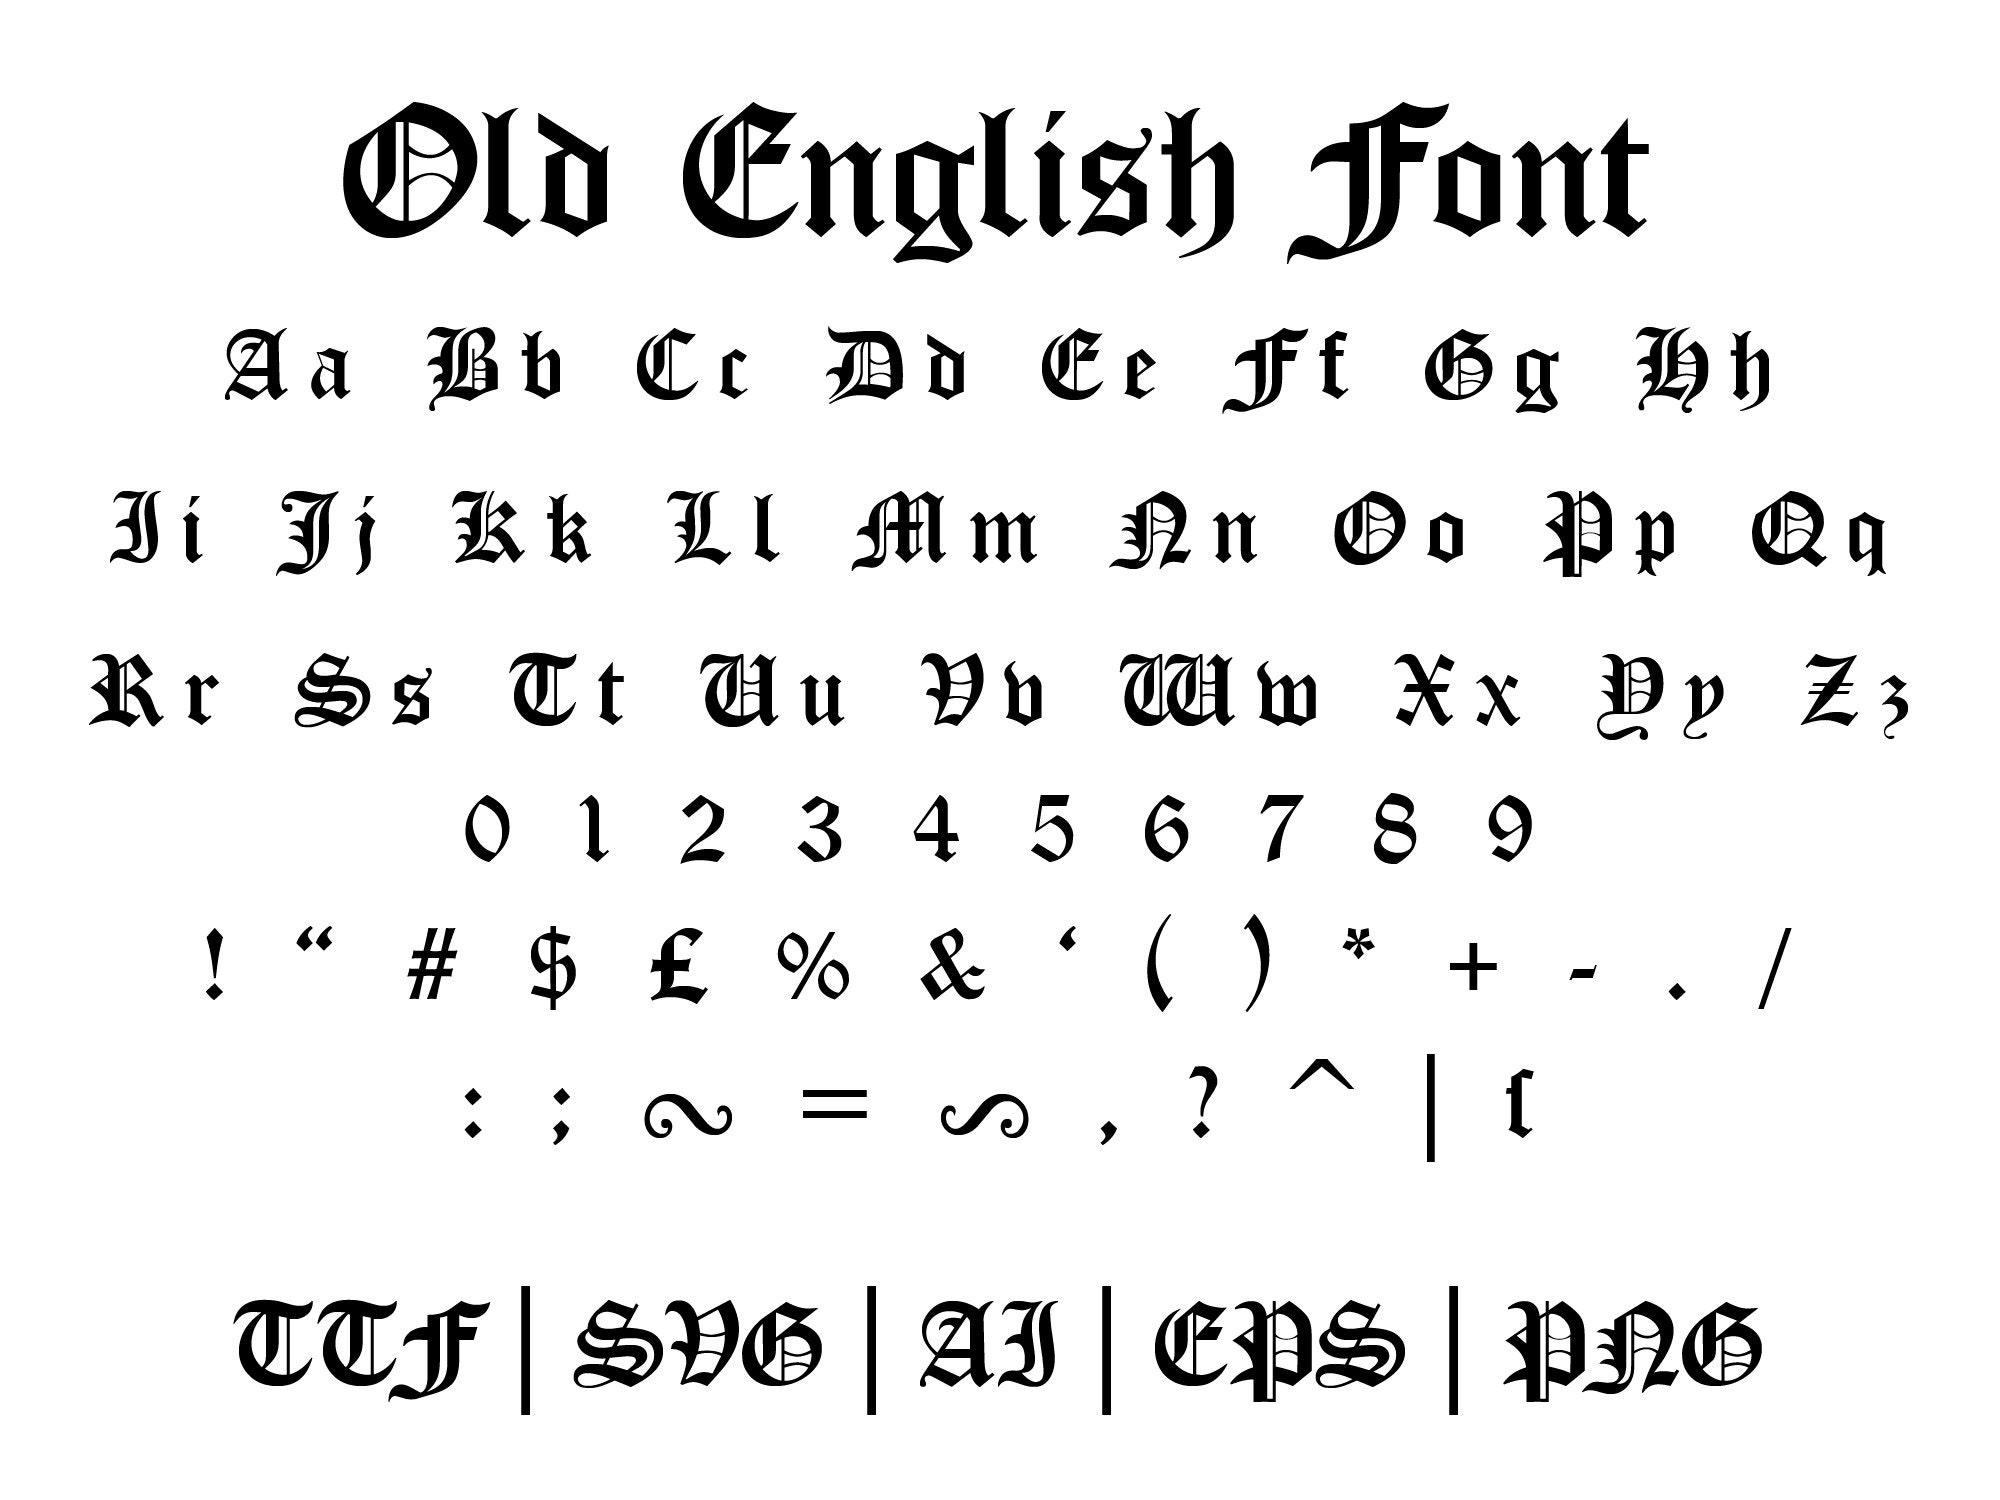 Capital letters font type Poet = 2-30 cm - stencils, stencils, text  stencils, letters, letter stencils, font stencils, font